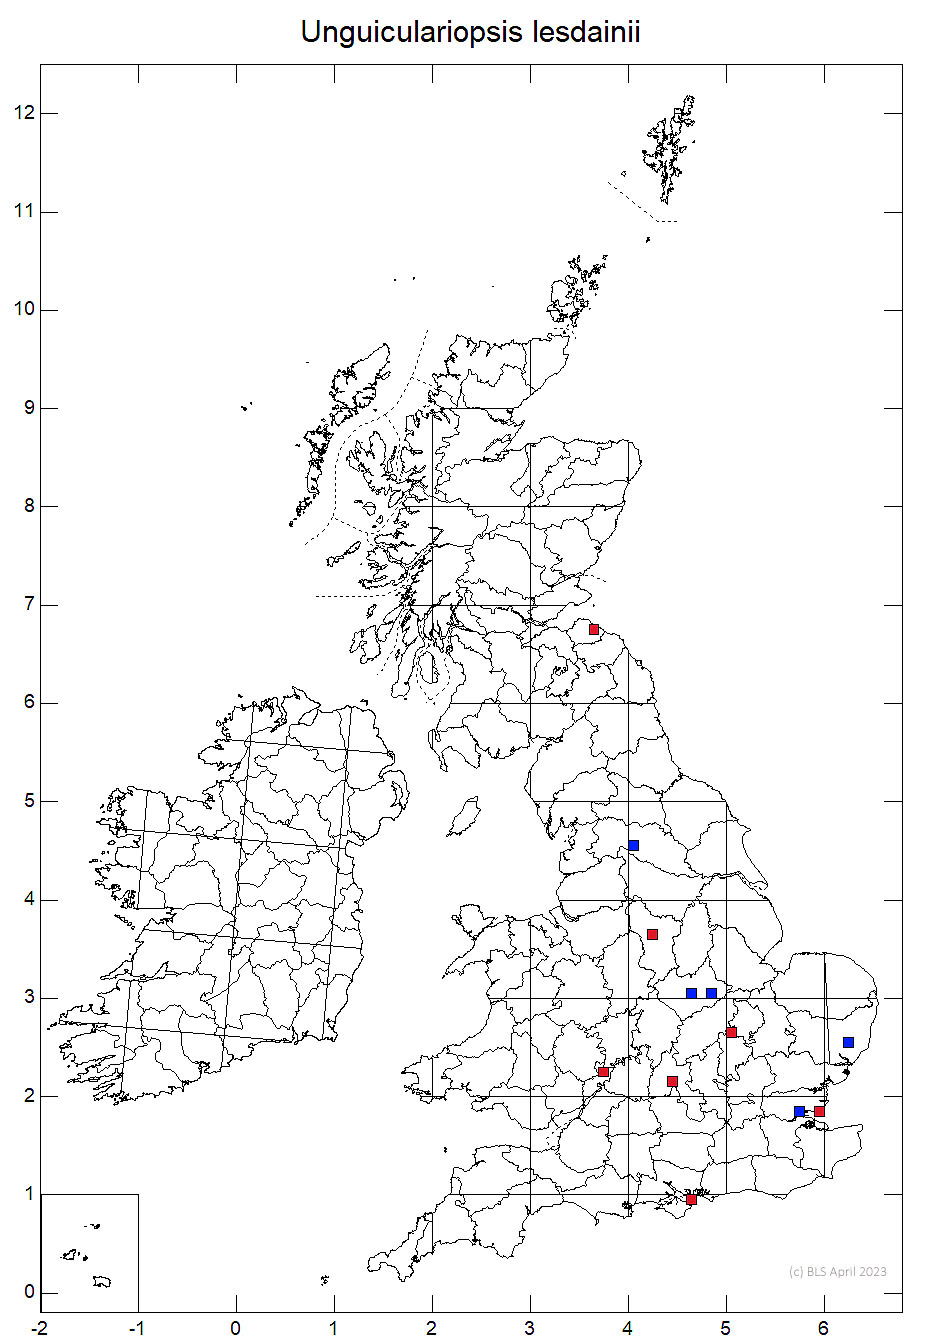 Unguiculariopsis lesdainii 10km sq distribution map